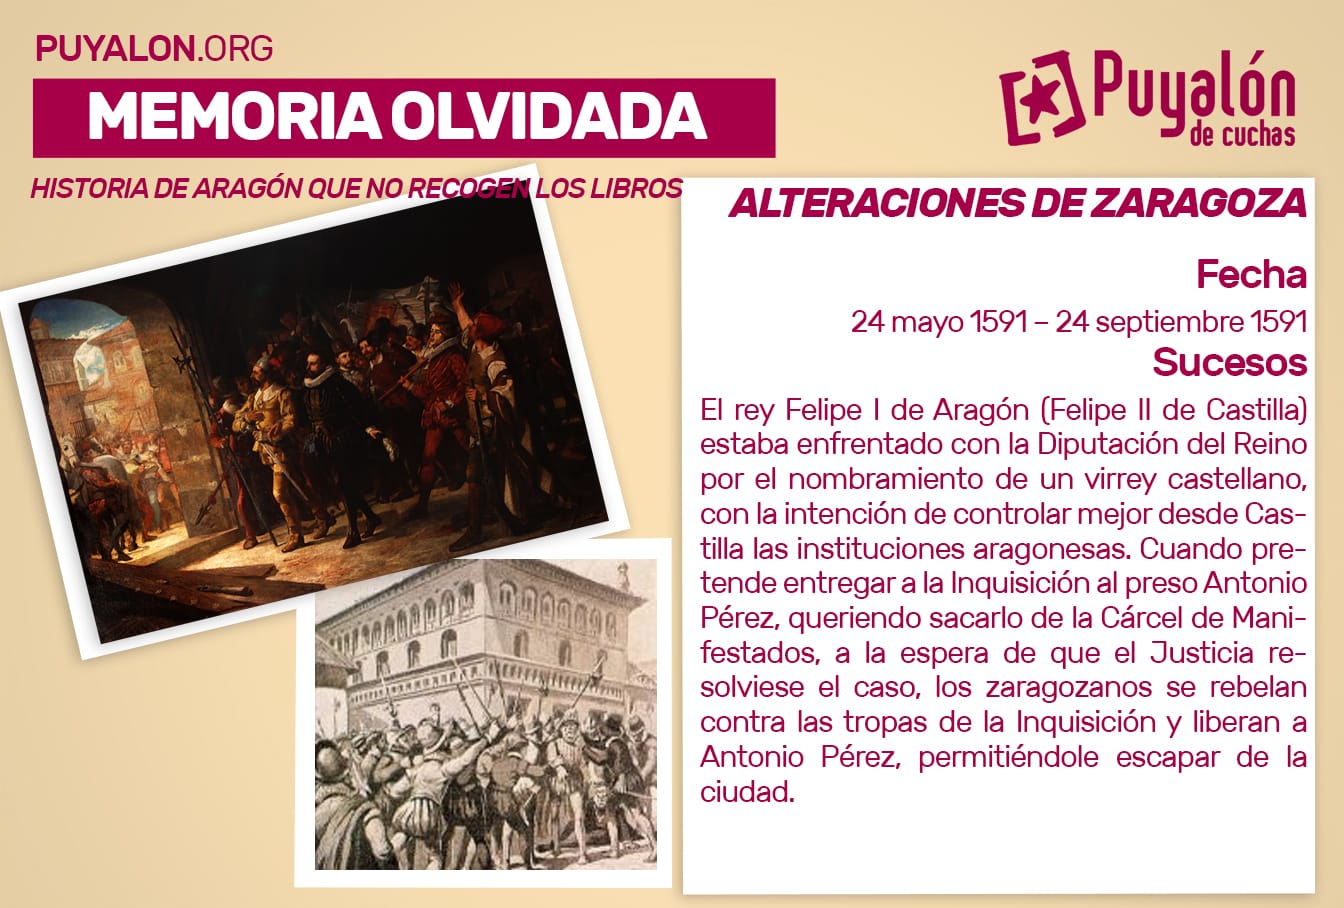 Alteraciones de Zaragoza 1591